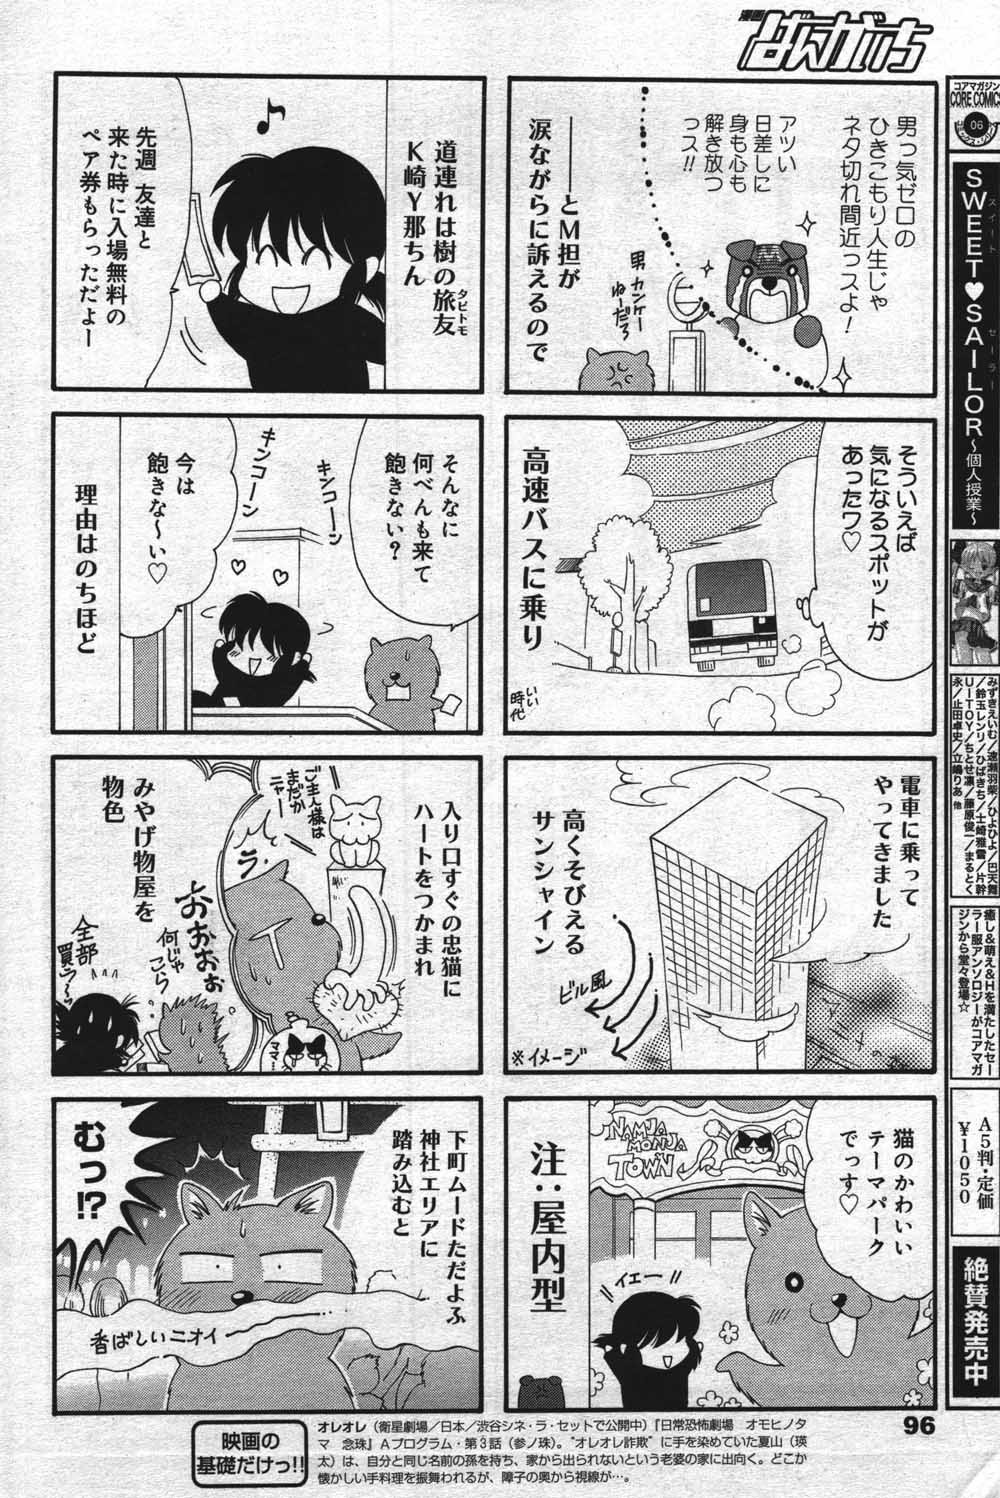 Manga Bangaichi [2004-07] (成年コミック) [雑誌]漫画ばんがいち 2004年07月号